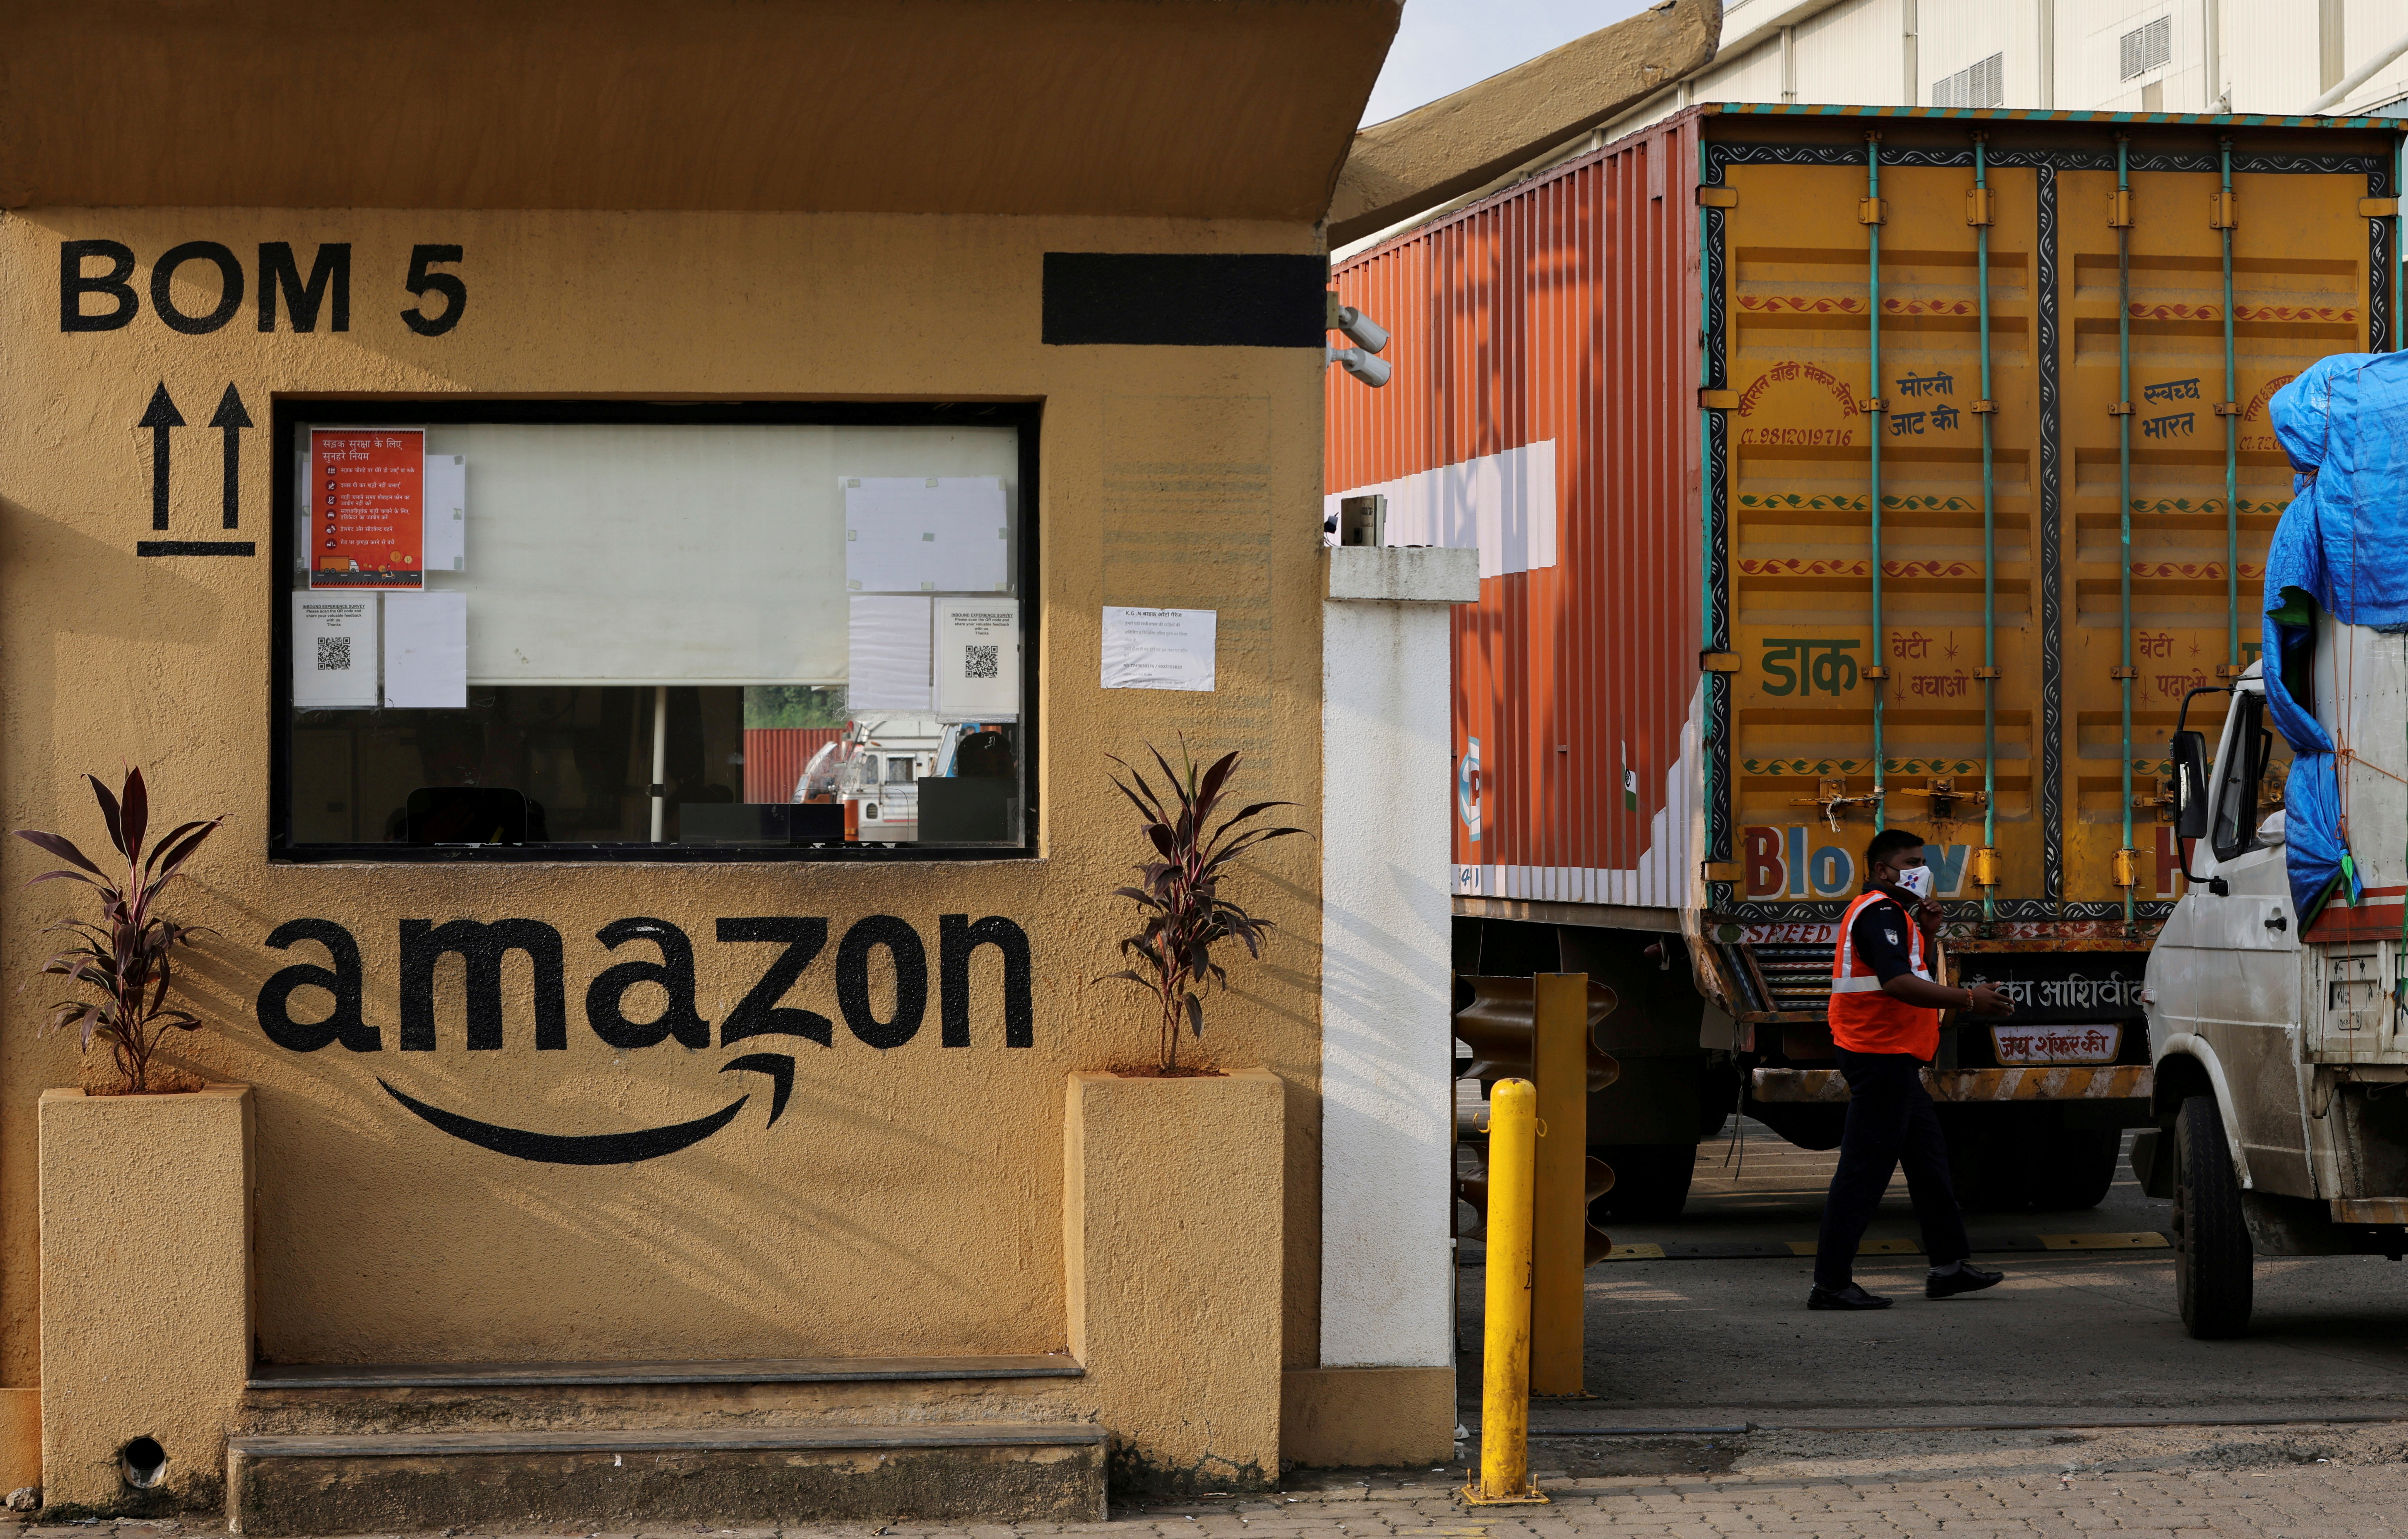 Amazon storage facility on the outskirts of Mumbai